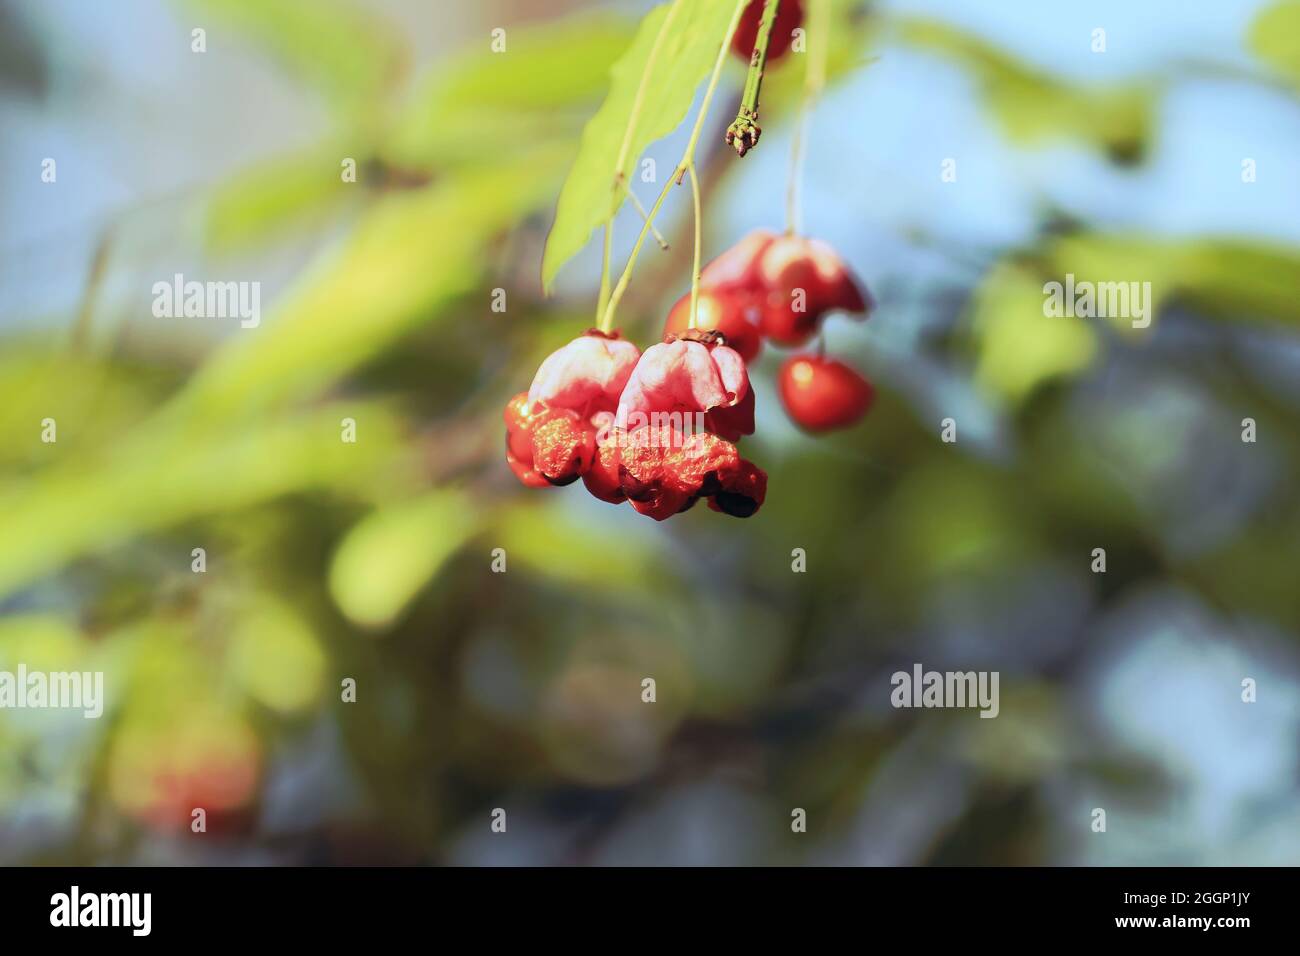 Euonymus verrucosus, broche barrée de Warty. Baies orange-rose sur branche avec feuillage vert dans la lumière du soleil sur fond bleu ciel. Effet aquarelle Banque D'Images